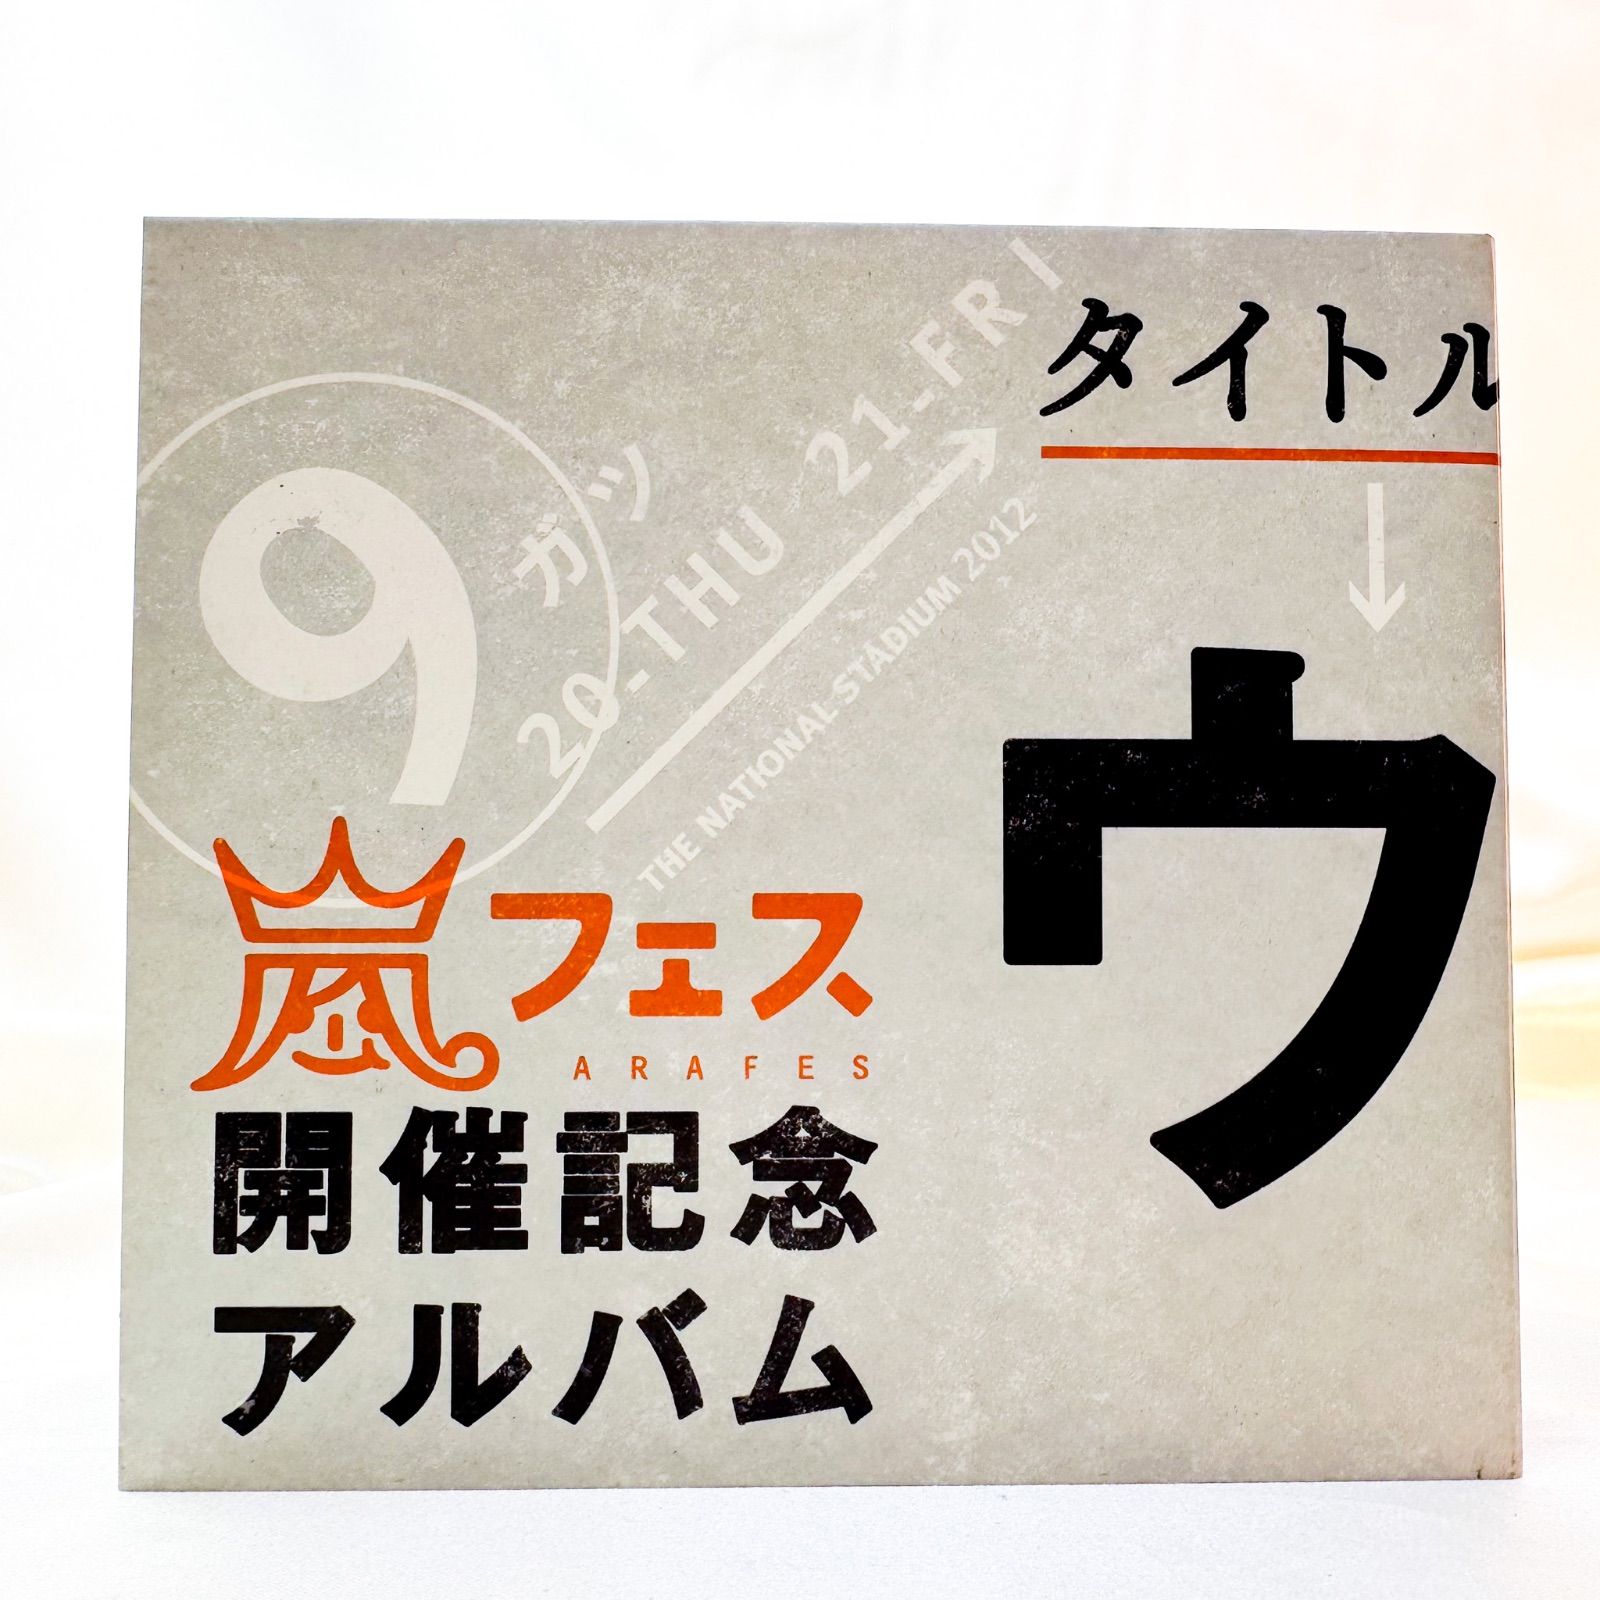 嵐『ウラ嵐マニア』CD アルバム - ジャニーズ セール SHOP - メルカリ